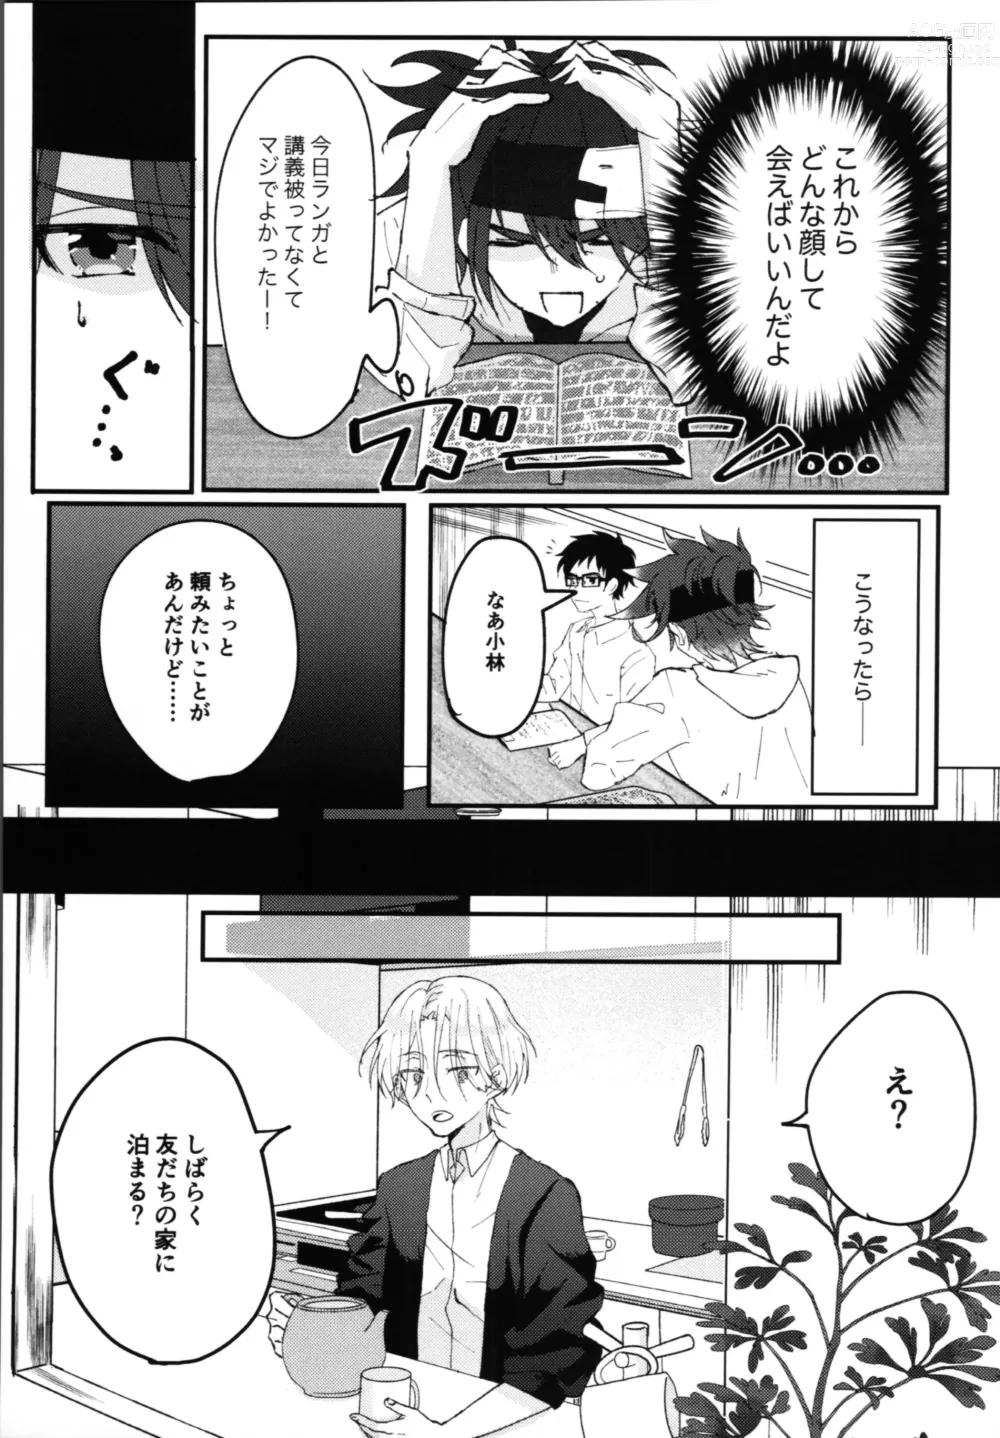 Page 10 of doujinshi Kimi no negao ni koishiteru